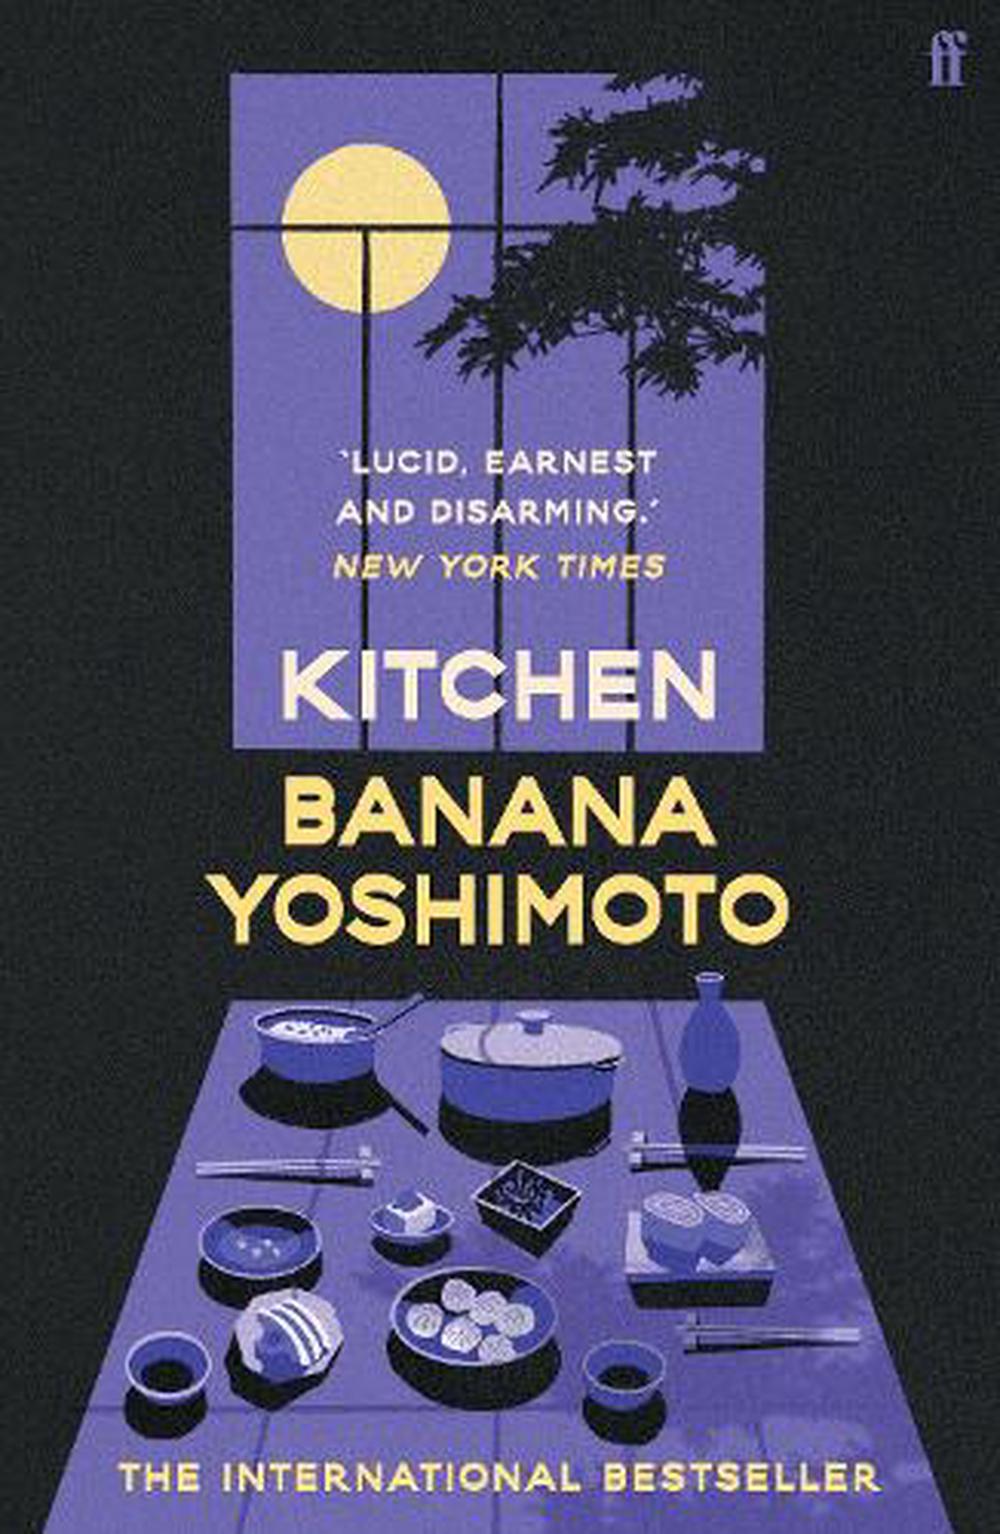 banana yoshimoto book